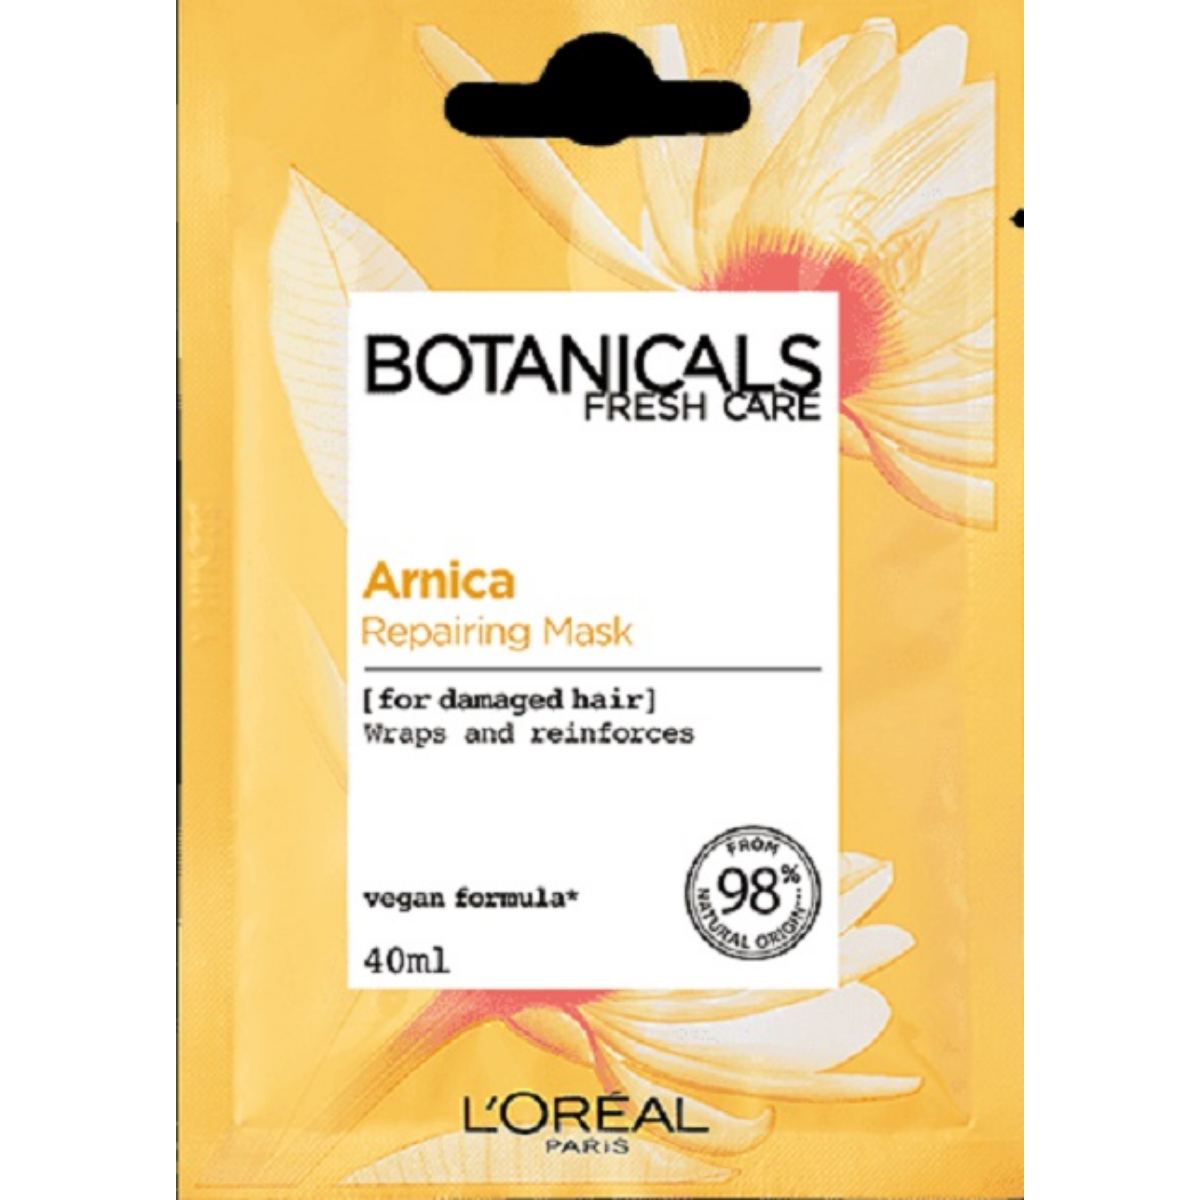 LOreal Botanicals Repairing Mask Arnica 40ml.